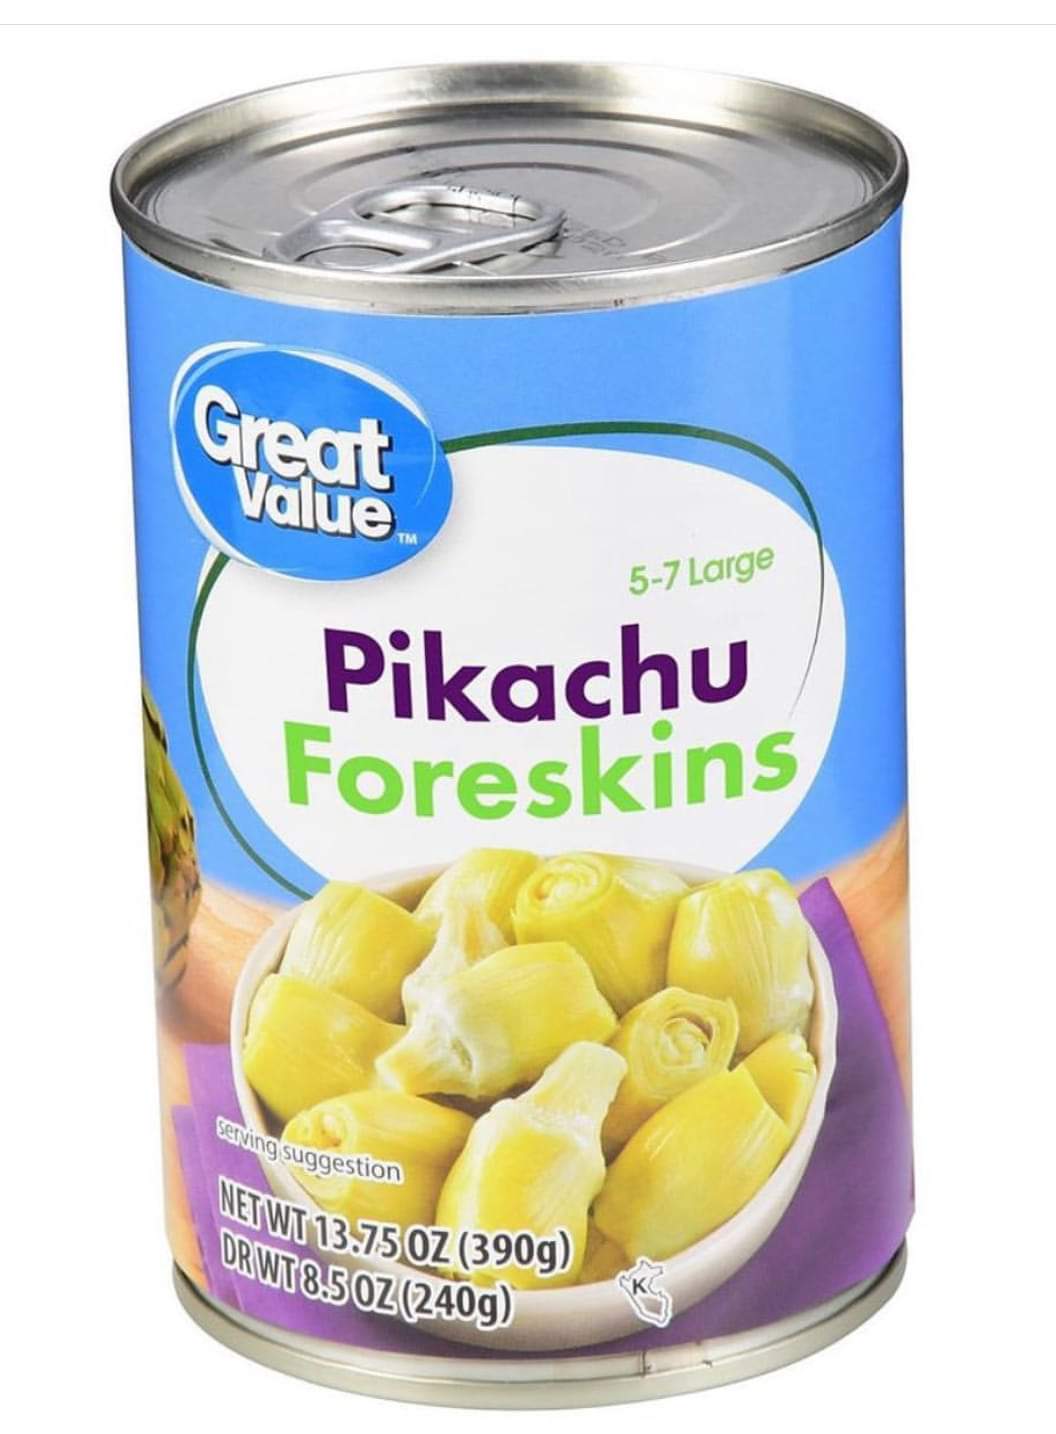 fruit - 57 Large Pikachu Foreskins serving suggestion Twt 13.75 Oz 390g Orwt 8.5 Oz 2409